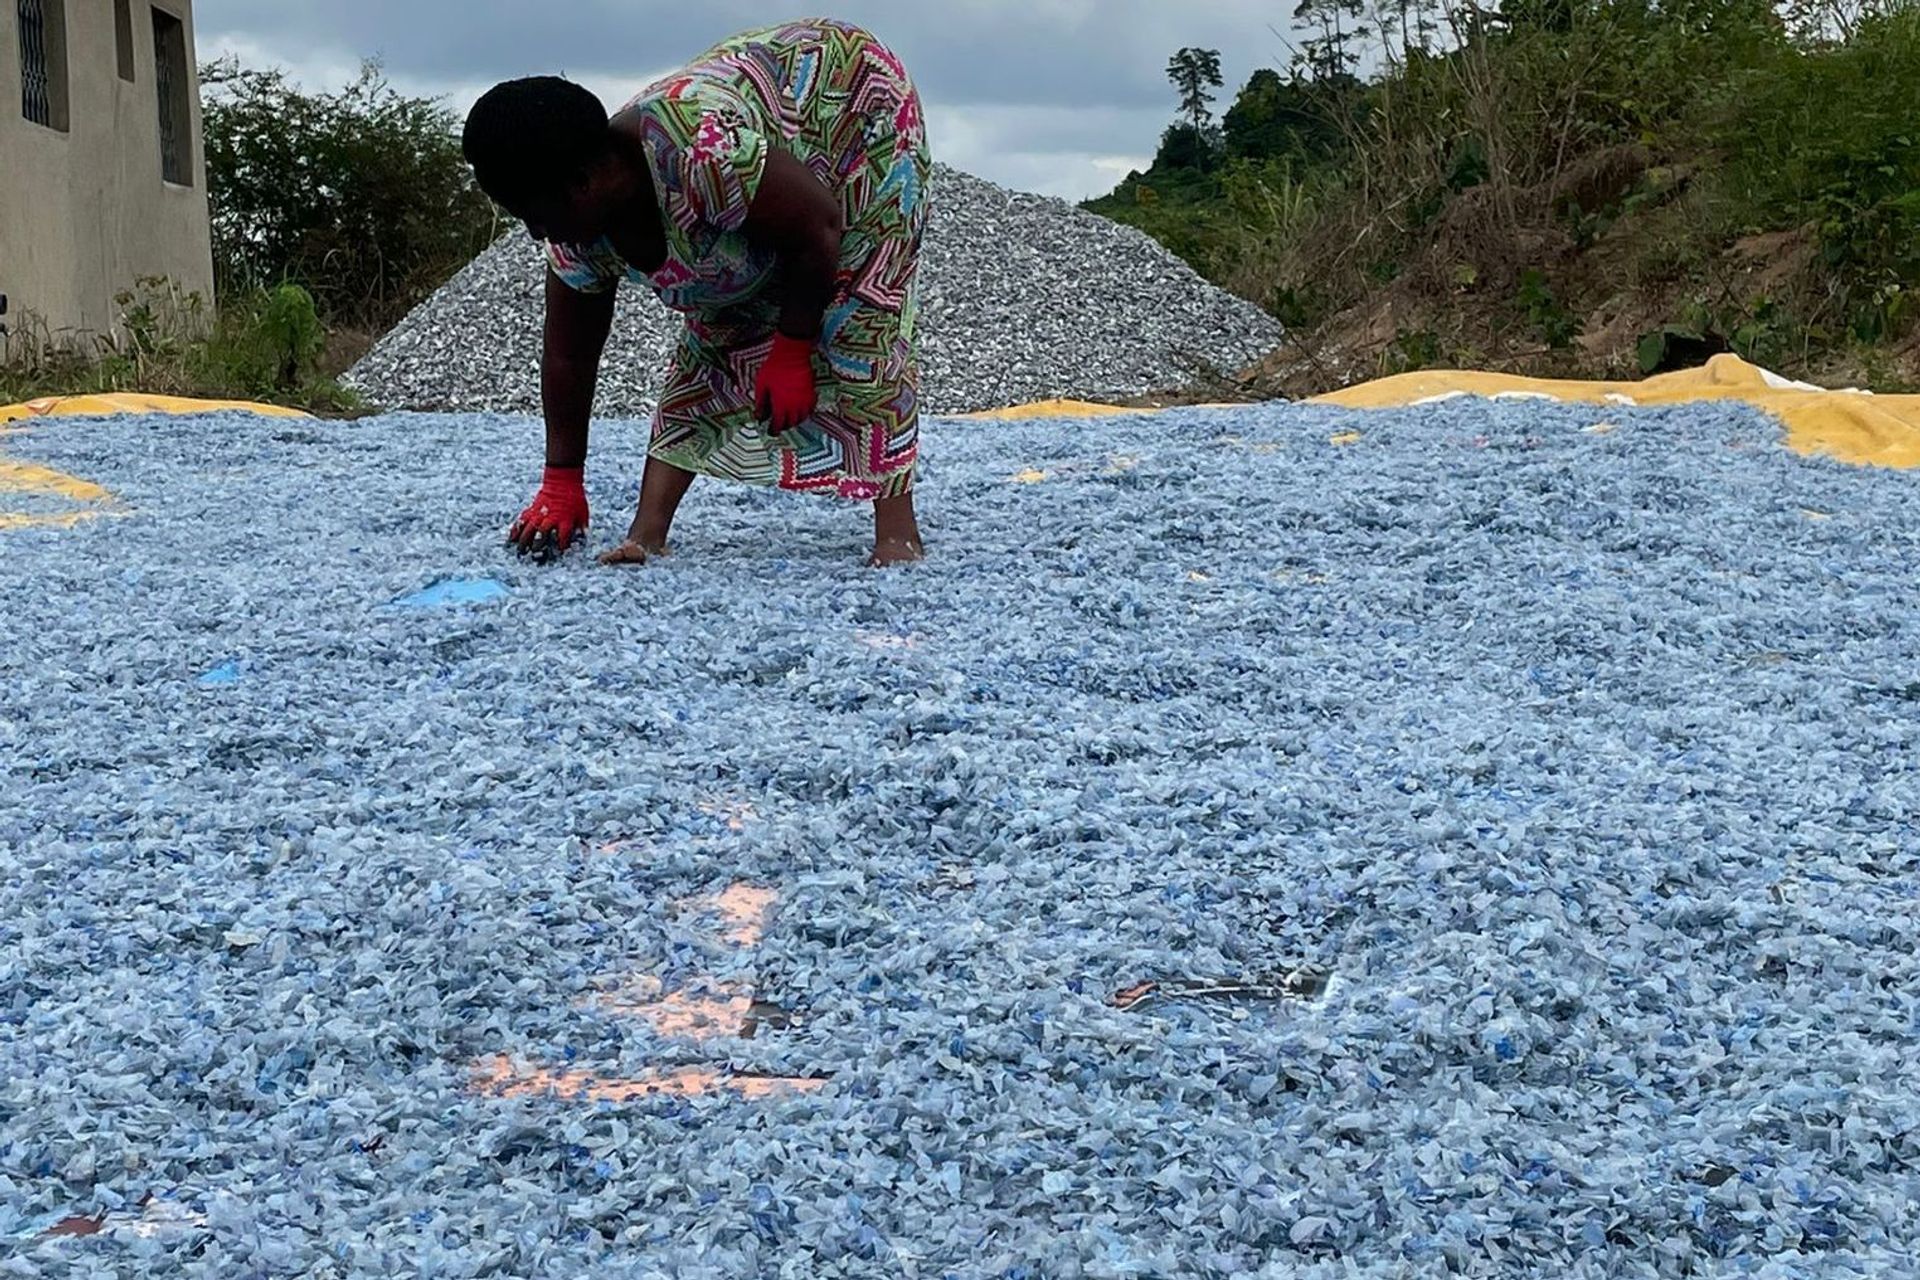 Le attività femminili di raccolta della plastica dell "Aassociazione Zenzero" in Ghana